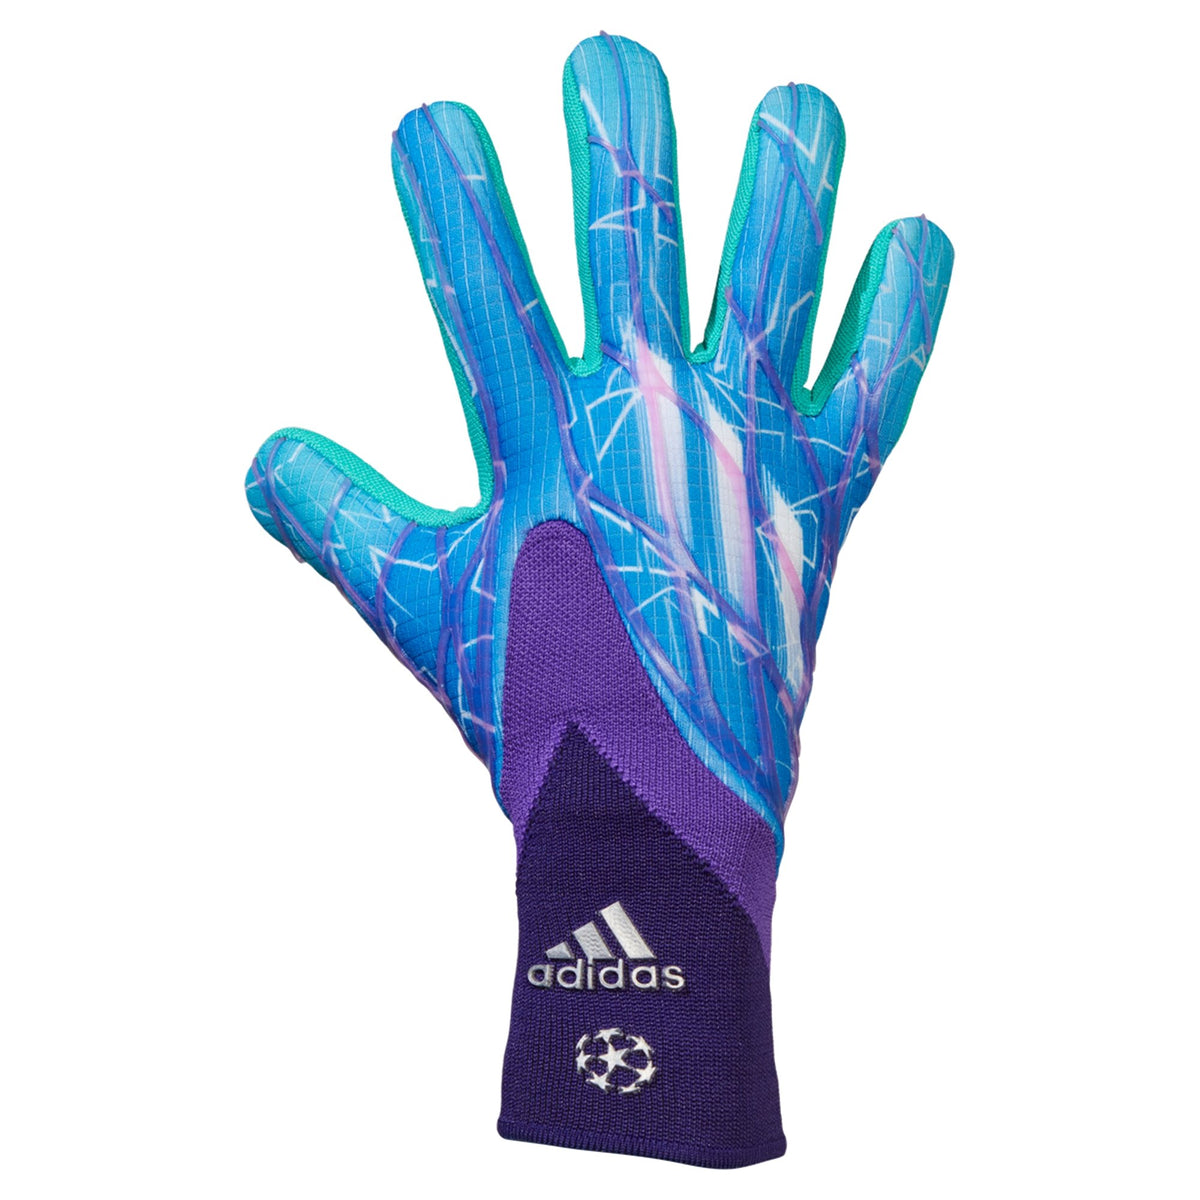 Adidas Predator Pro Goalkeeper Gloves - Solar Red/Solar Green - 11